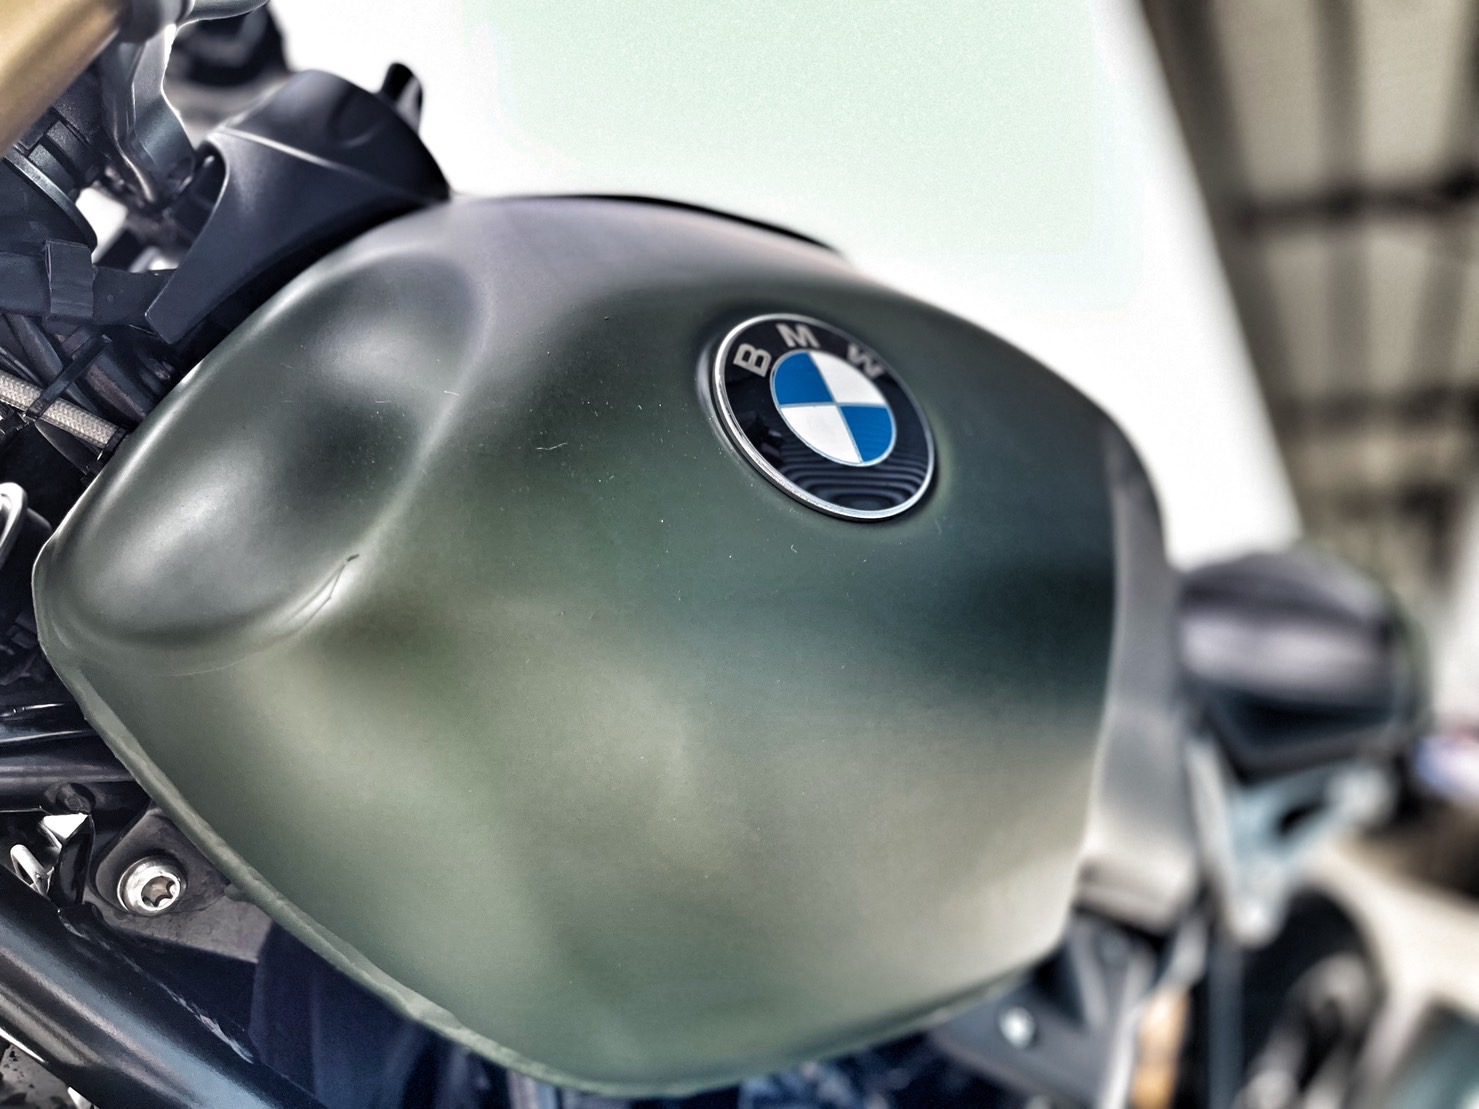 BMW R nineT - 中古/二手車出售中 無摔車無事故 視覺改裝 里程保證 小資族二手重機買賣 | 小資族二手重機買賣